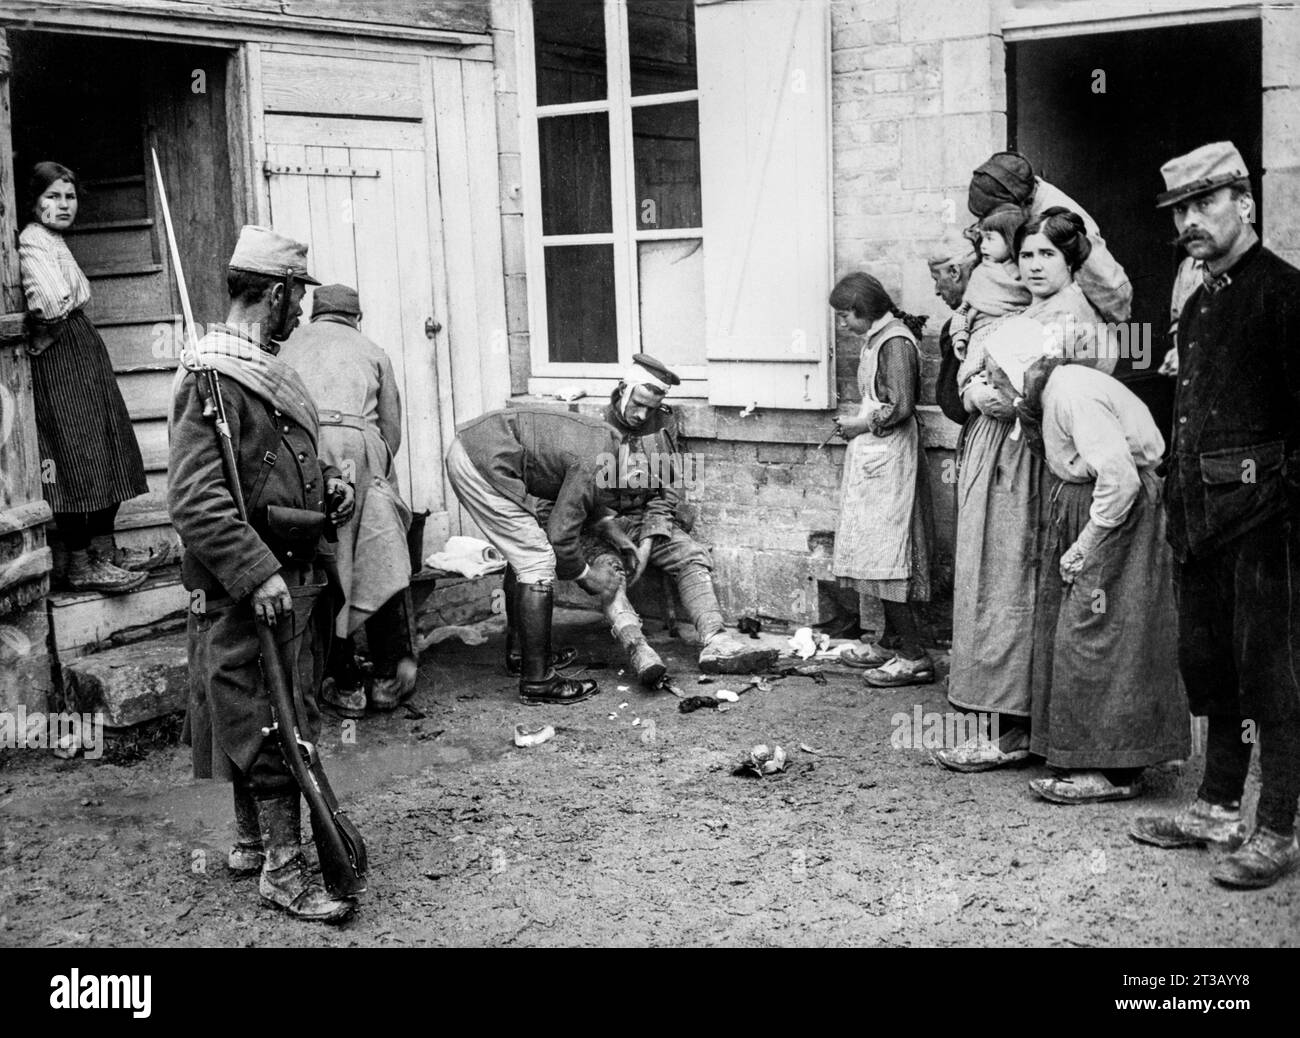 Photographie , Un soldat allemand est soigné dans une ferme en France sous la supervision de soldats français pendant la première guerre mondiale Banque D'Images